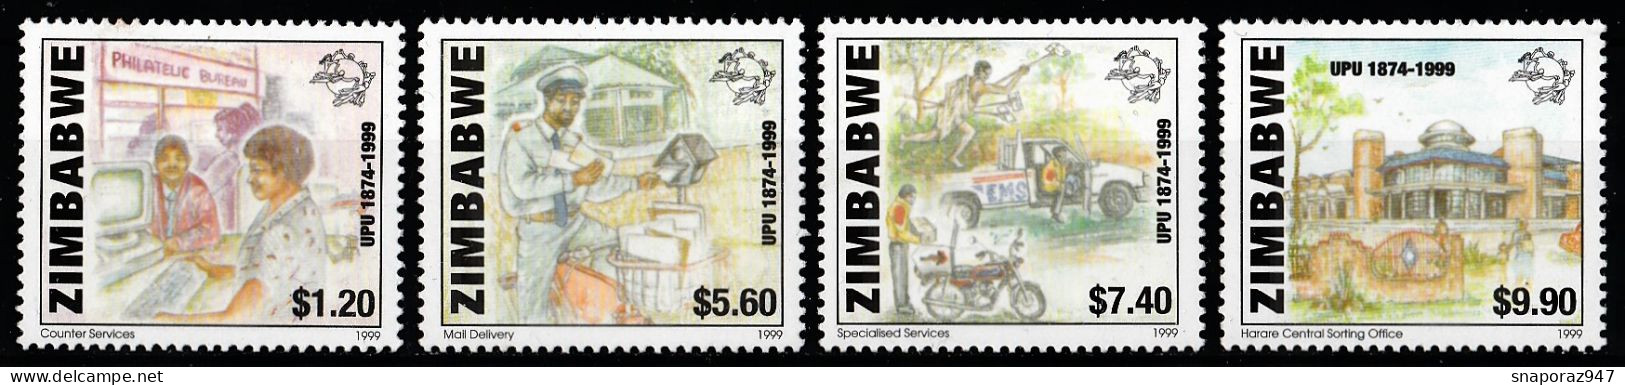 2000 Zimbabwe 125th UPU Set MNH** B578 - UPU (Union Postale Universelle)